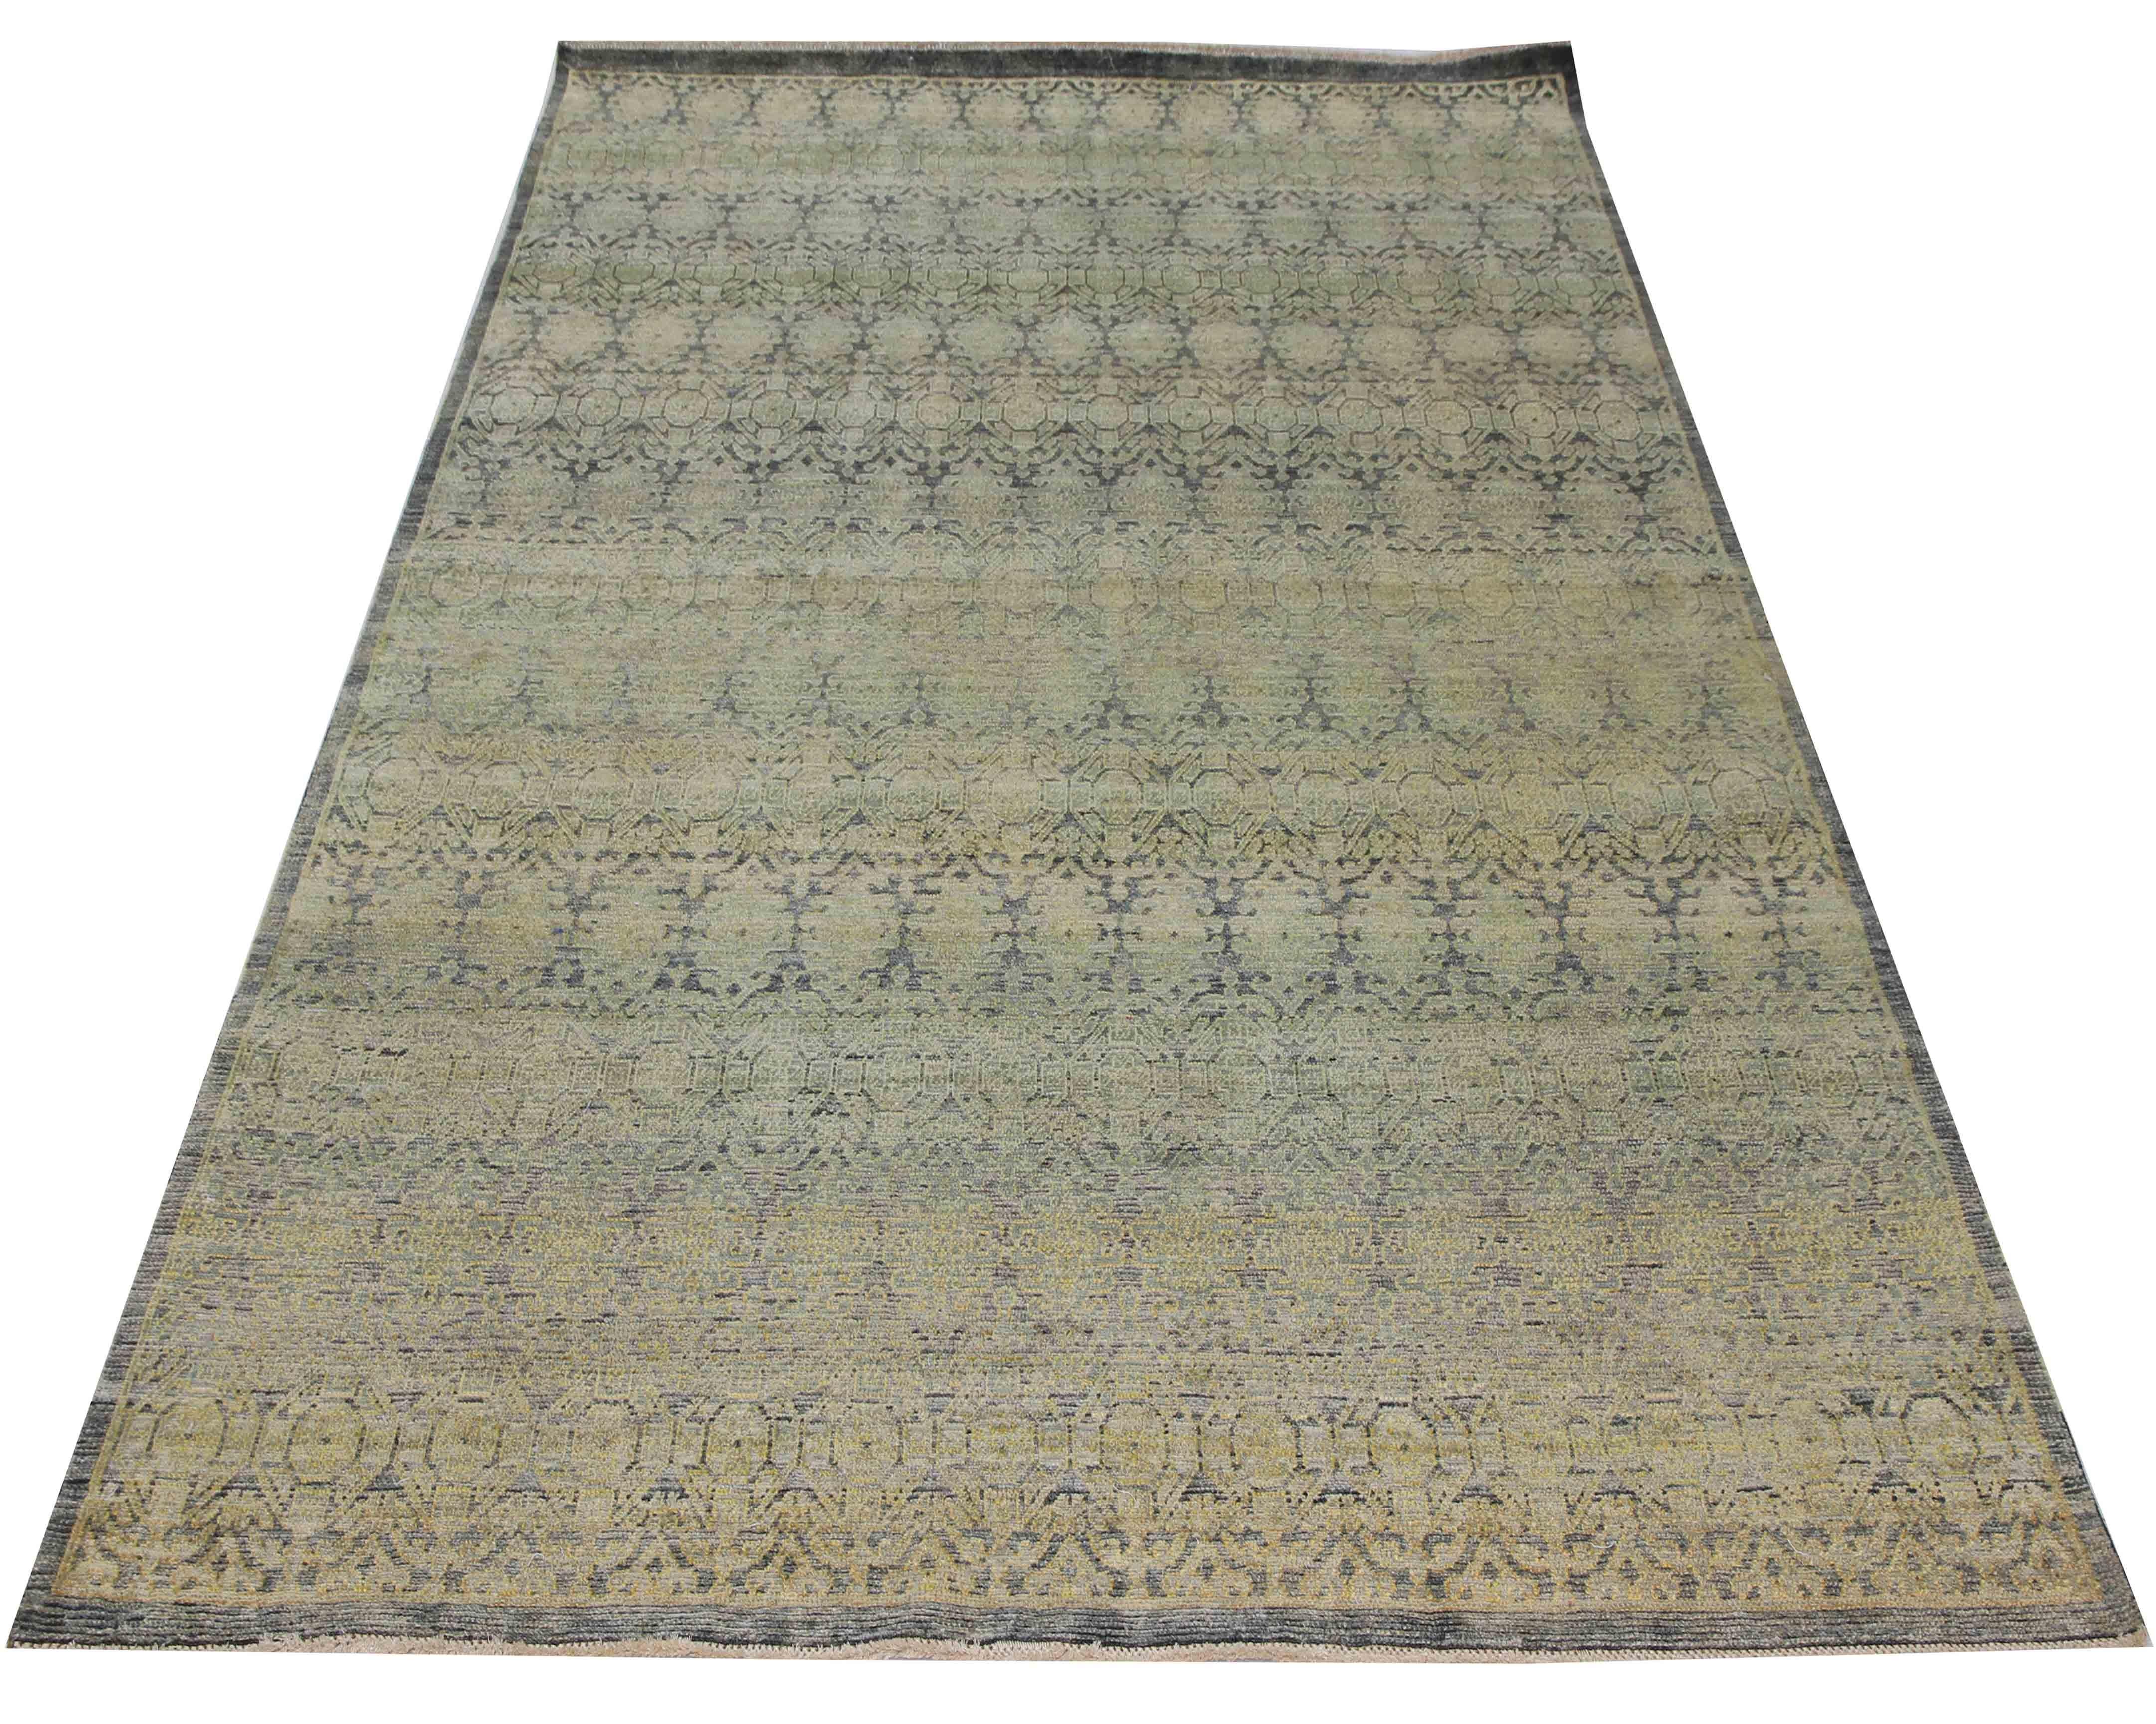 Ce tapis est fabriqué à partir de laine recyclée provenant de régions reculées de l'Inde. Fabriquée à partir de fibres de laine recyclées, cette pièce a été réalisée selon des procédés biologiques à chaque étape de la production textile. Le design